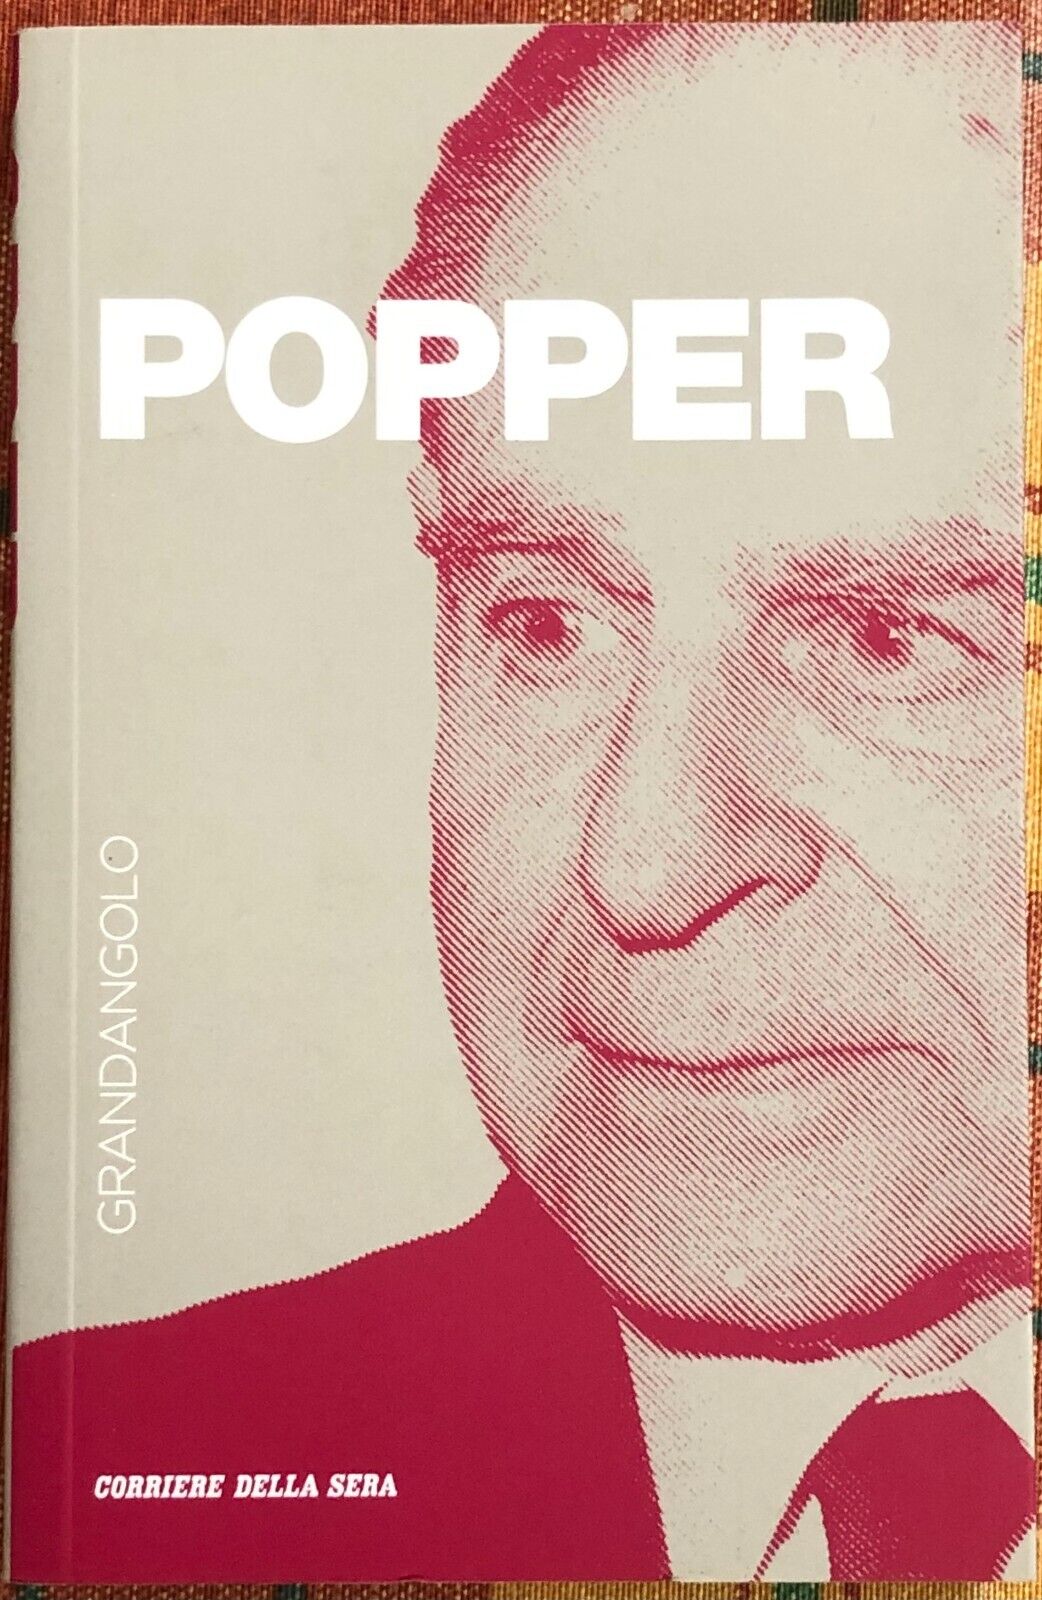 Grandangolo n. 24 - Popper di Roberto Maiocchi, 2019, Corriere Della Sera